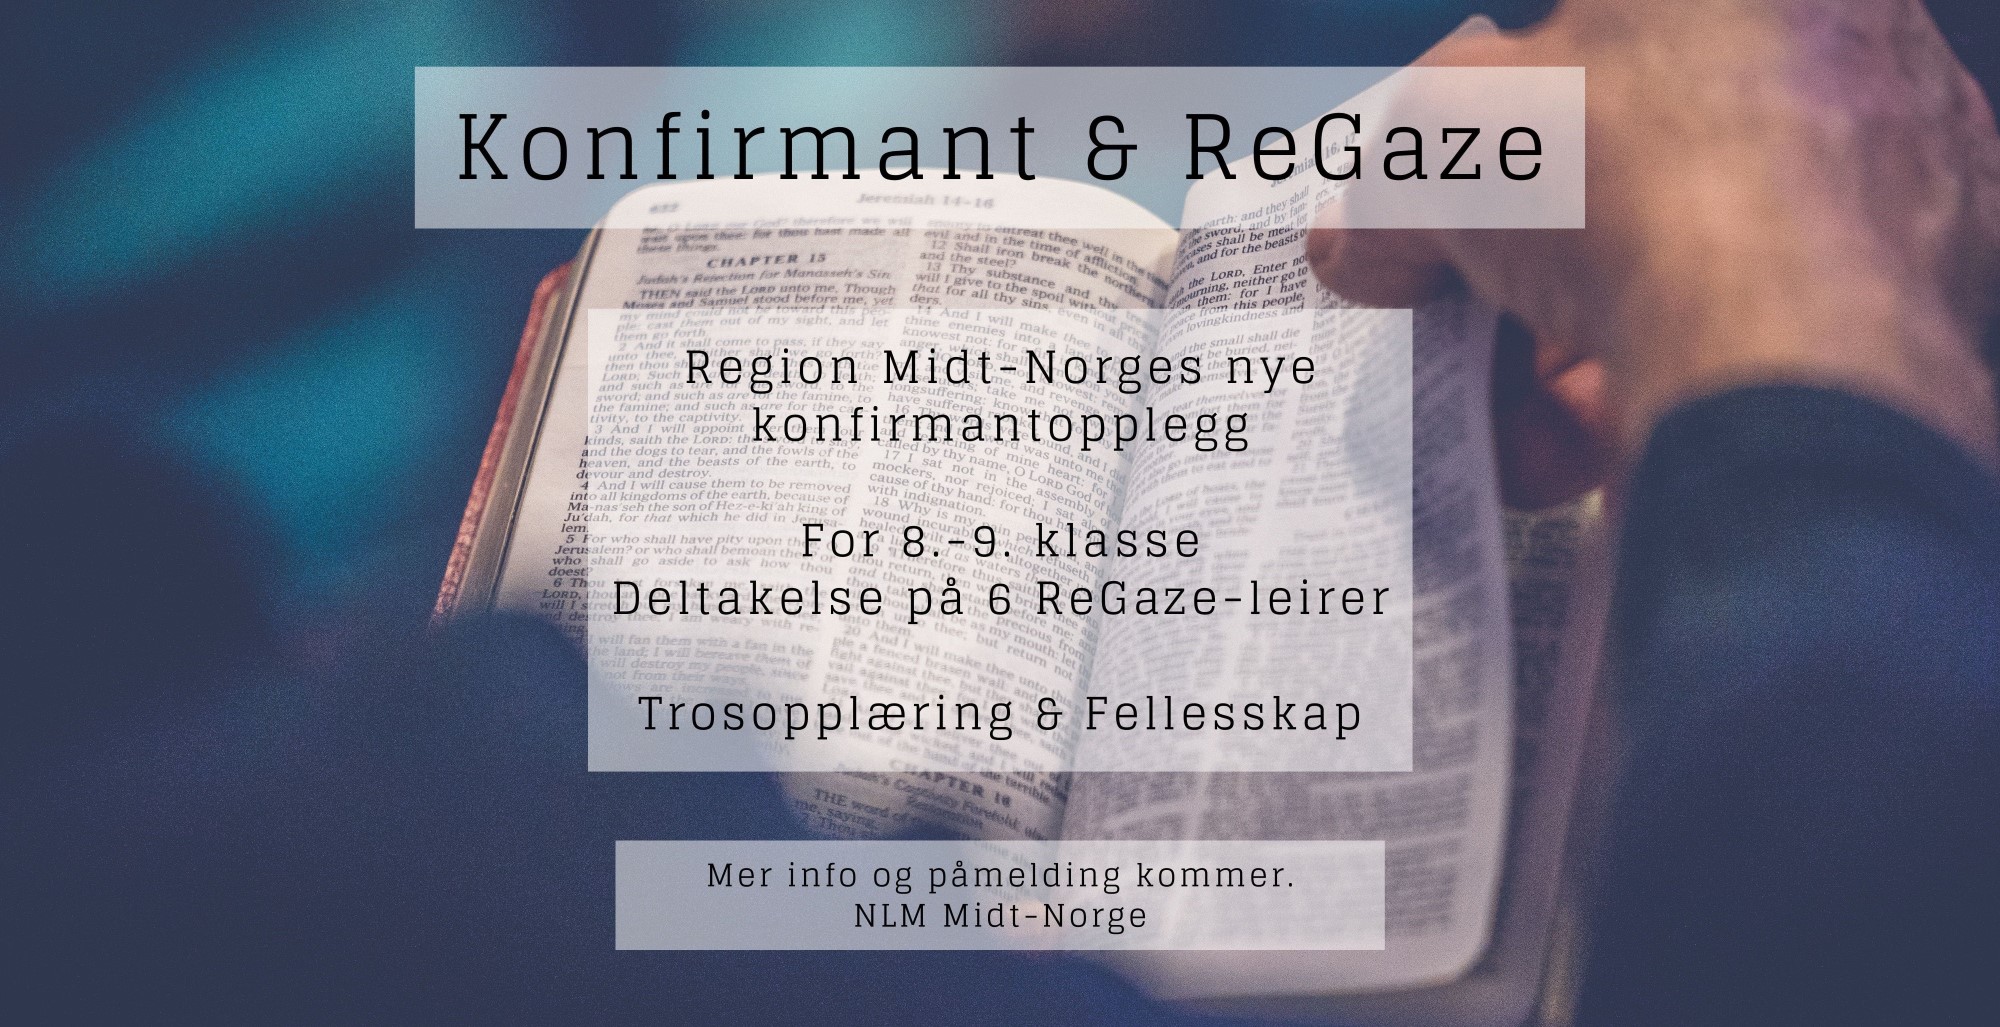 Nytt konfirmantopplegg i NLM Midt-Norge